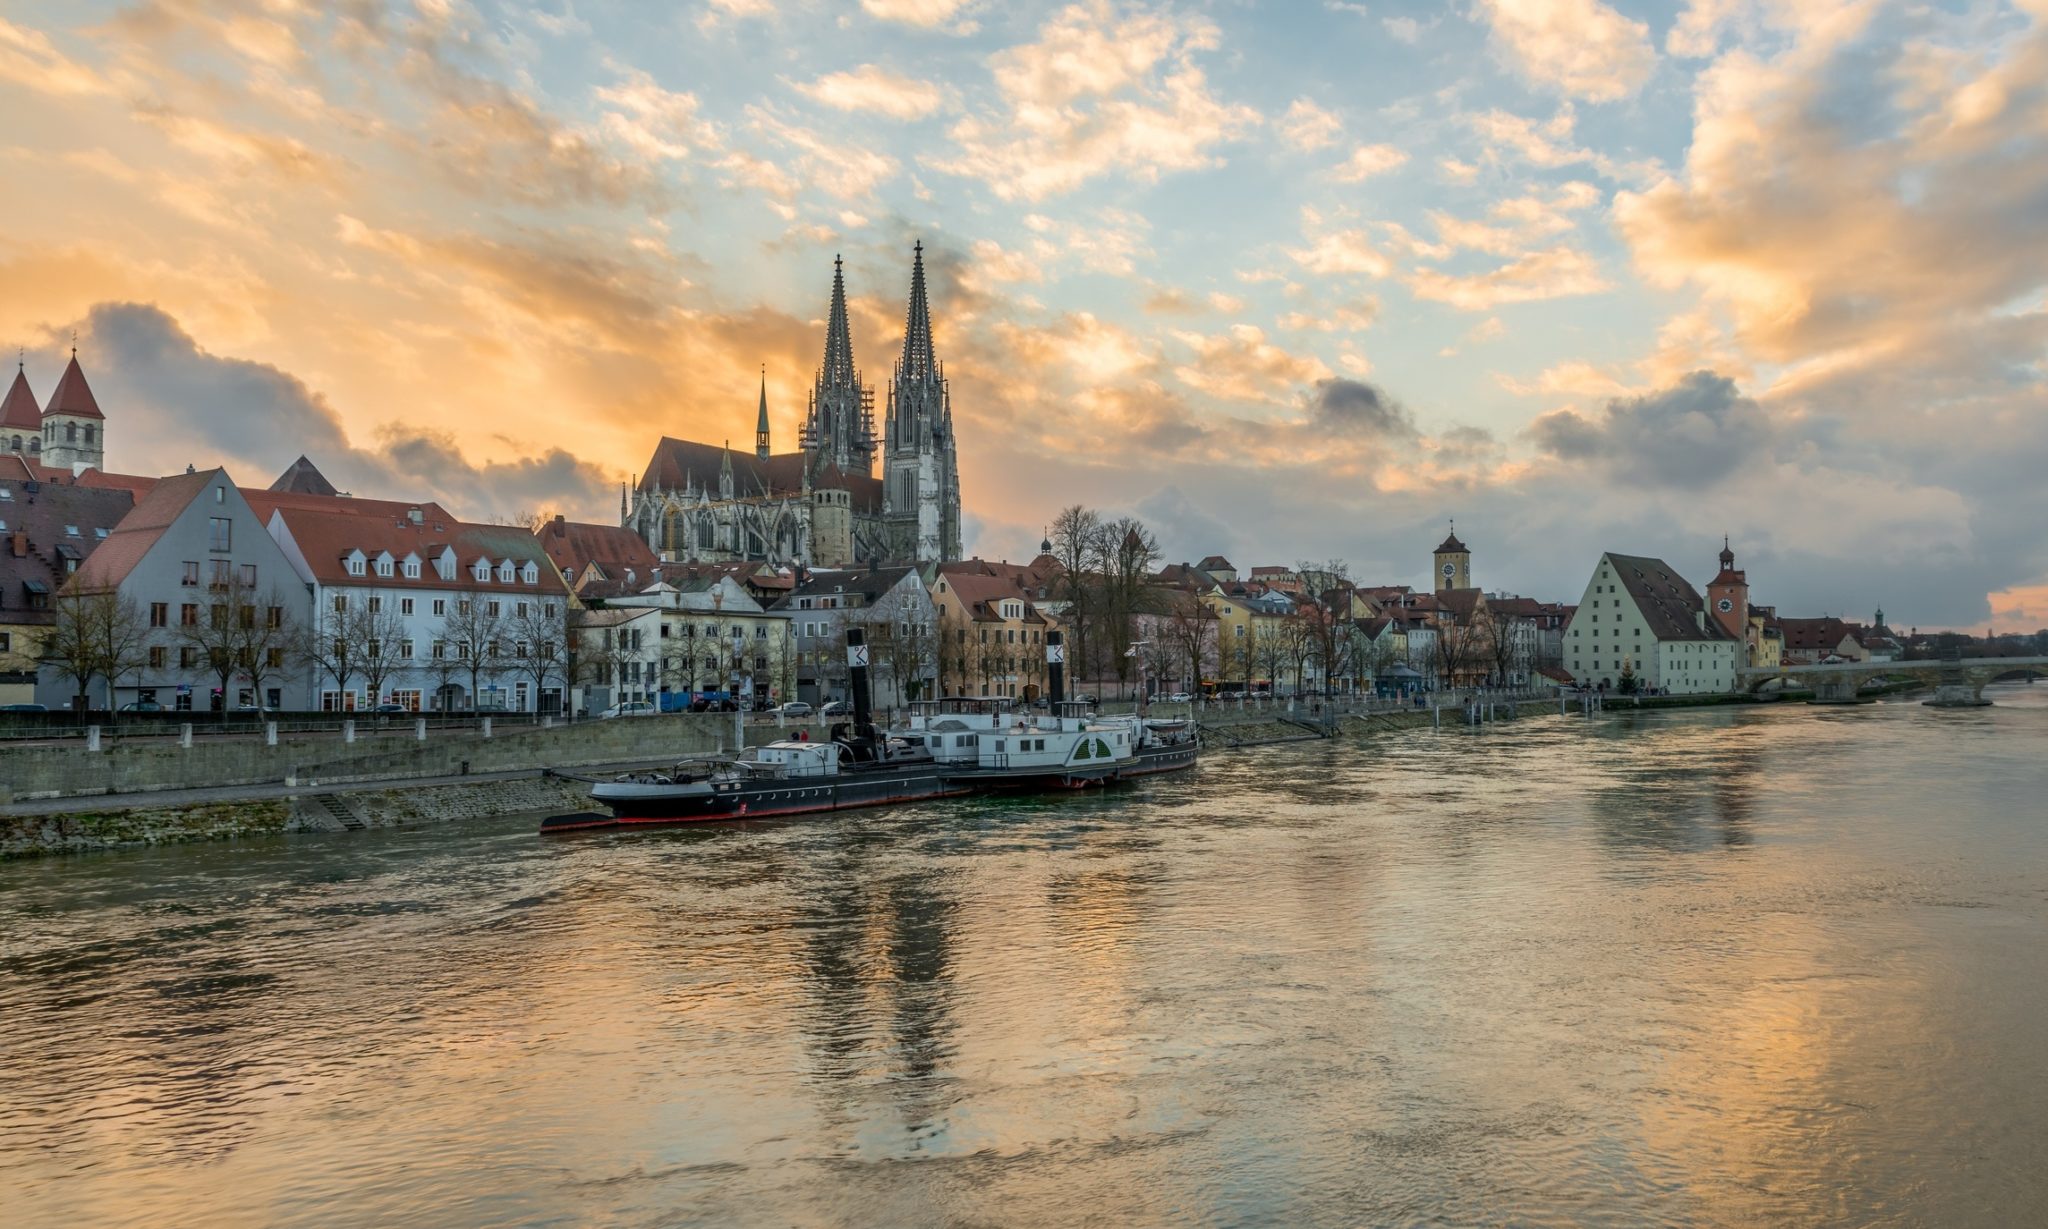 Haushaltsauflösung und Entrümpelung in Regensburg